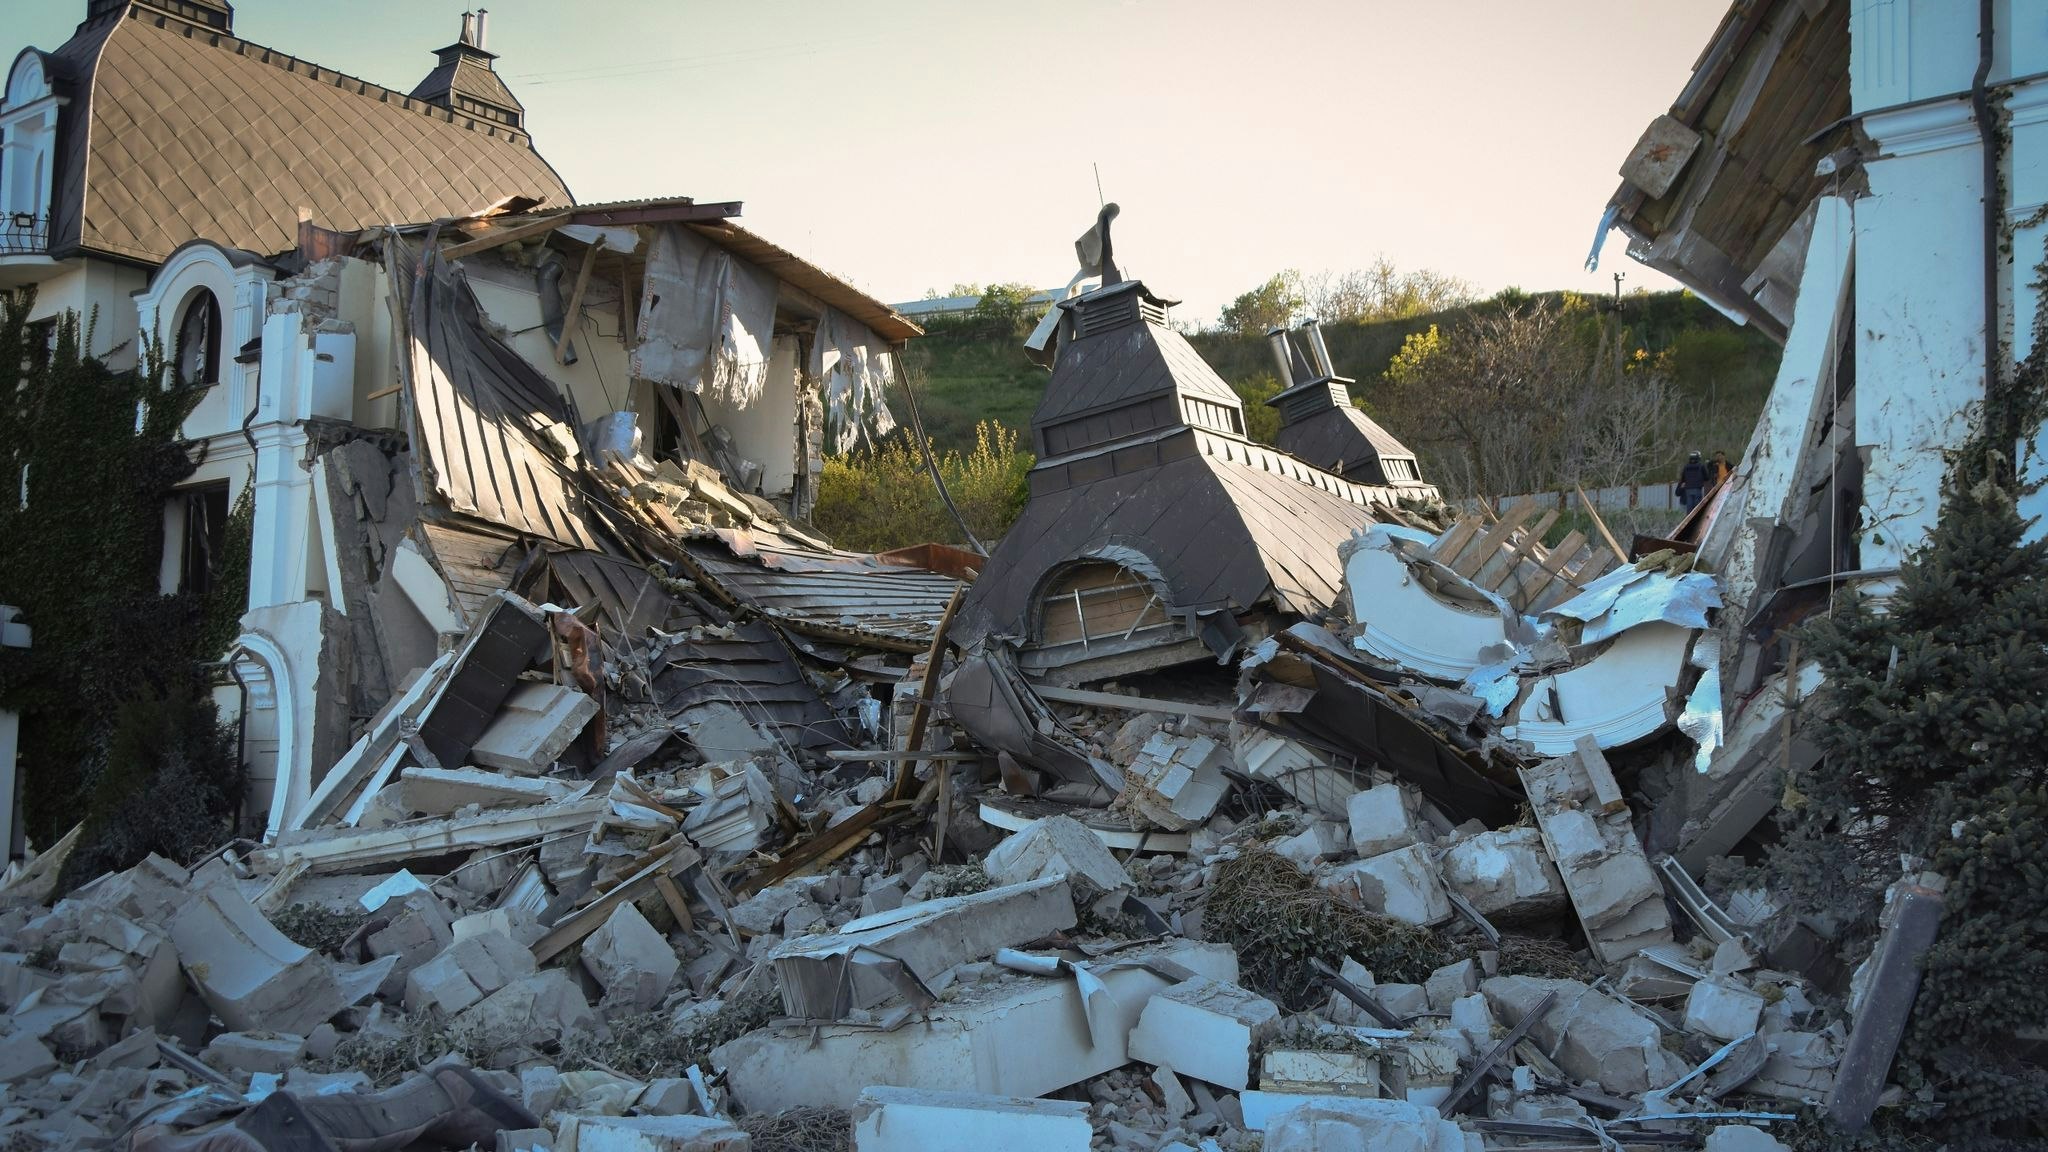 Das Grande Pettine Hotel in Odessa liegt in Trümmern, nachdem es von einer Rakete getroffen wurde. Foto: dpa/Pshybyshevsky